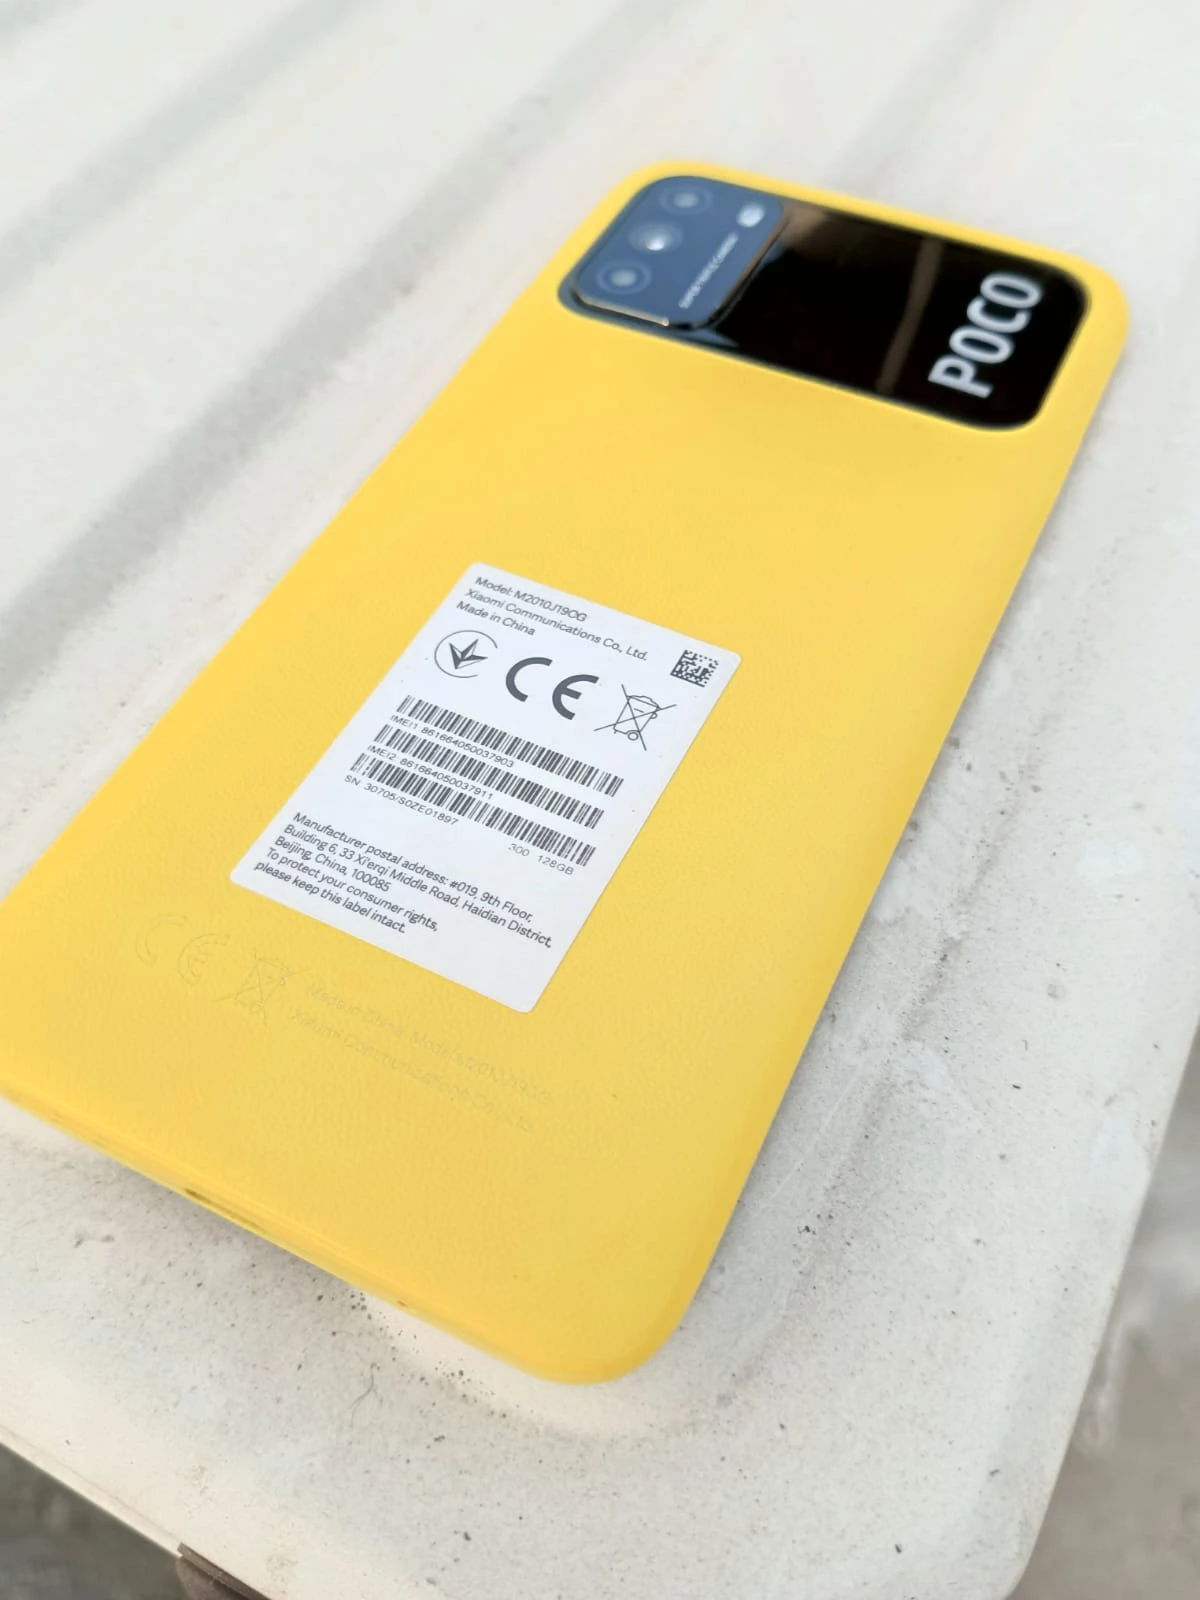 xiaomi phones price in lahore